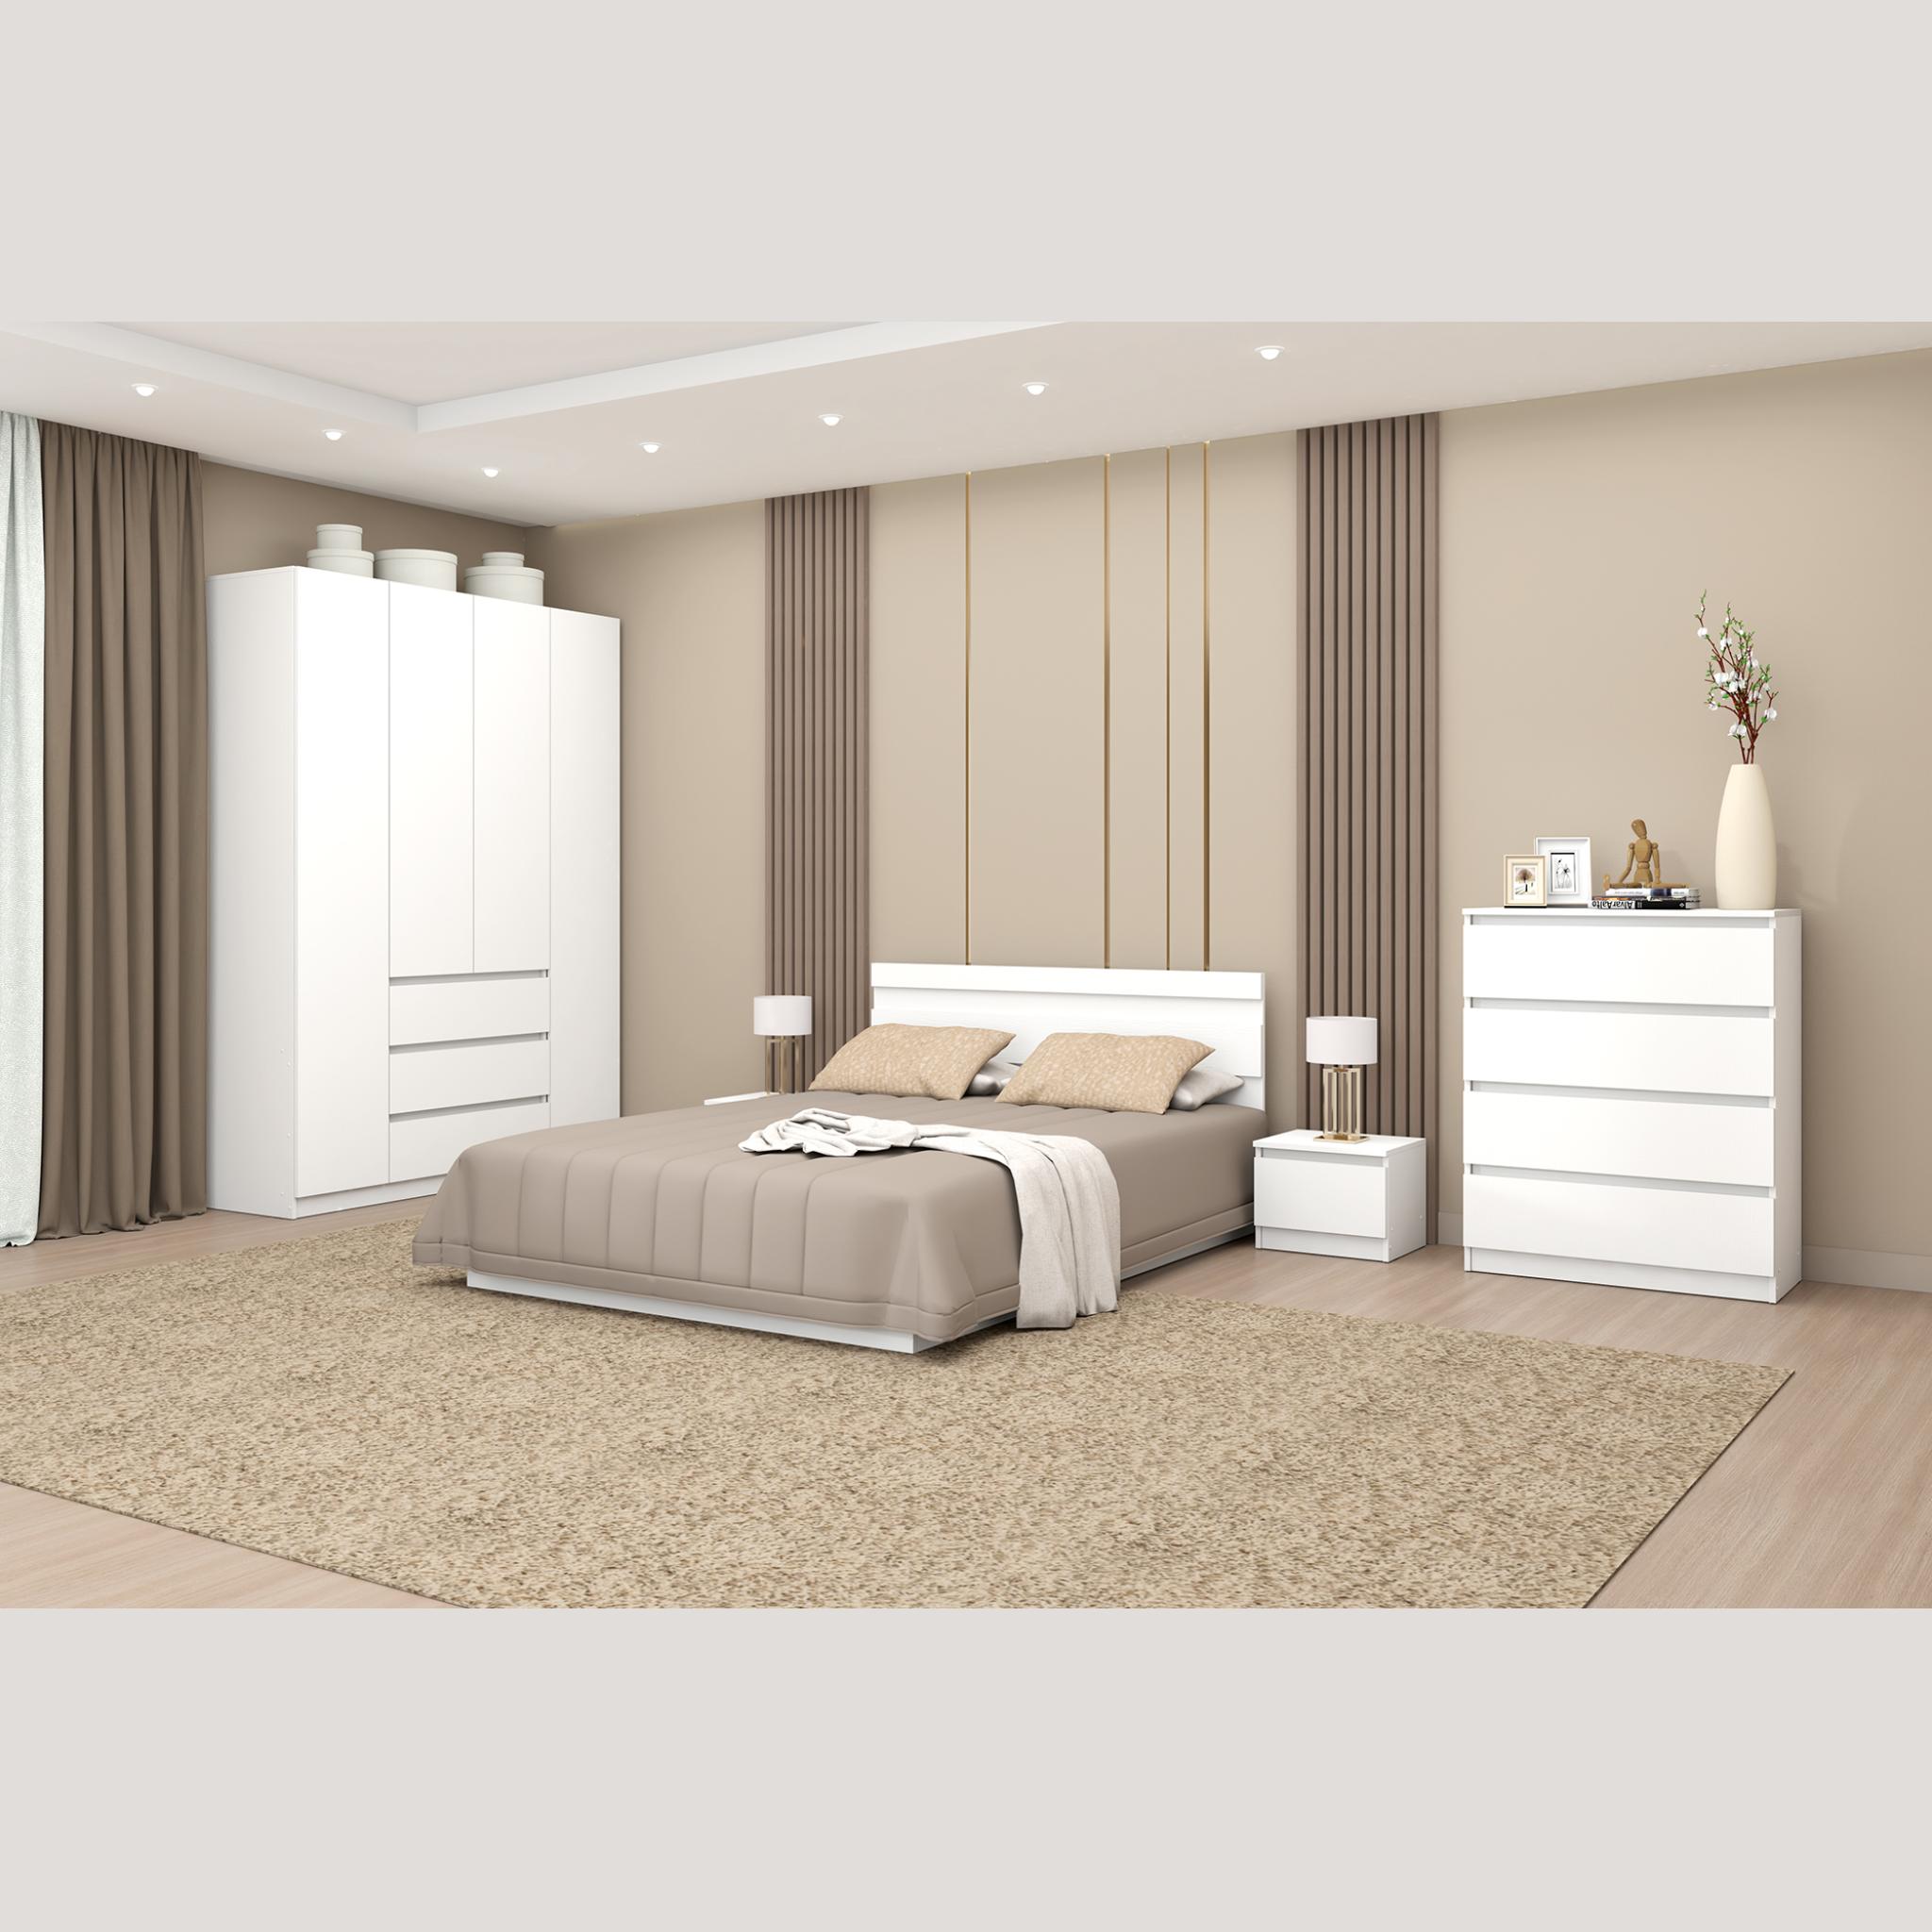 Модульная спальня Хилтон Набор 1 белый текстурный